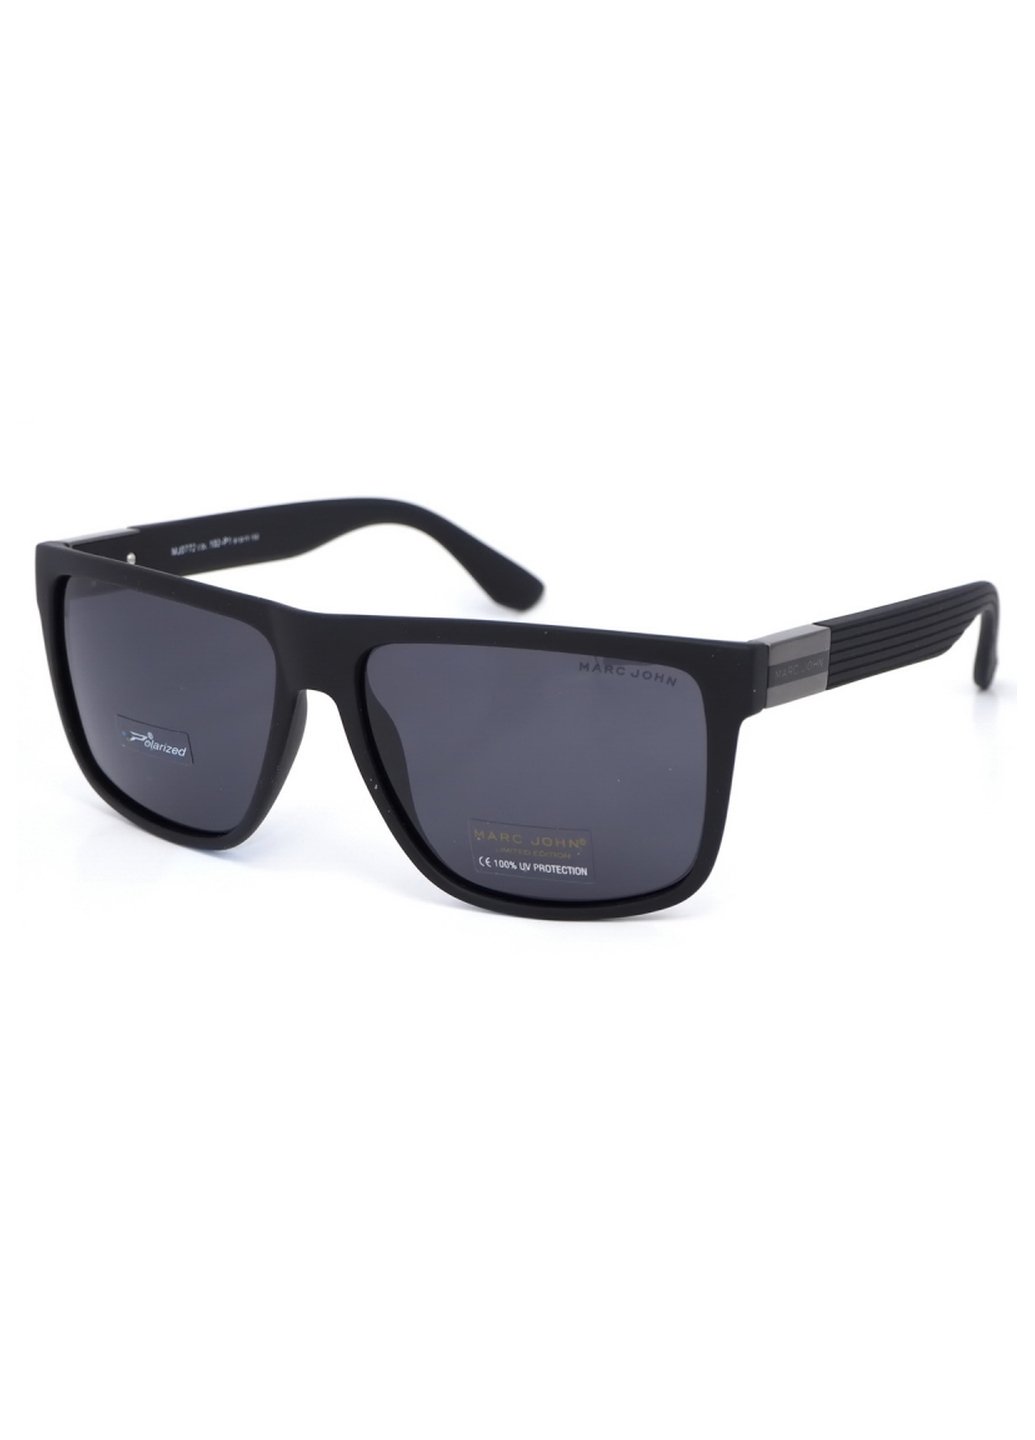 Купить Мужские солнцезащитные очки Marc John с поляризацией MJ0772 190027 - Черный в интернет-магазине